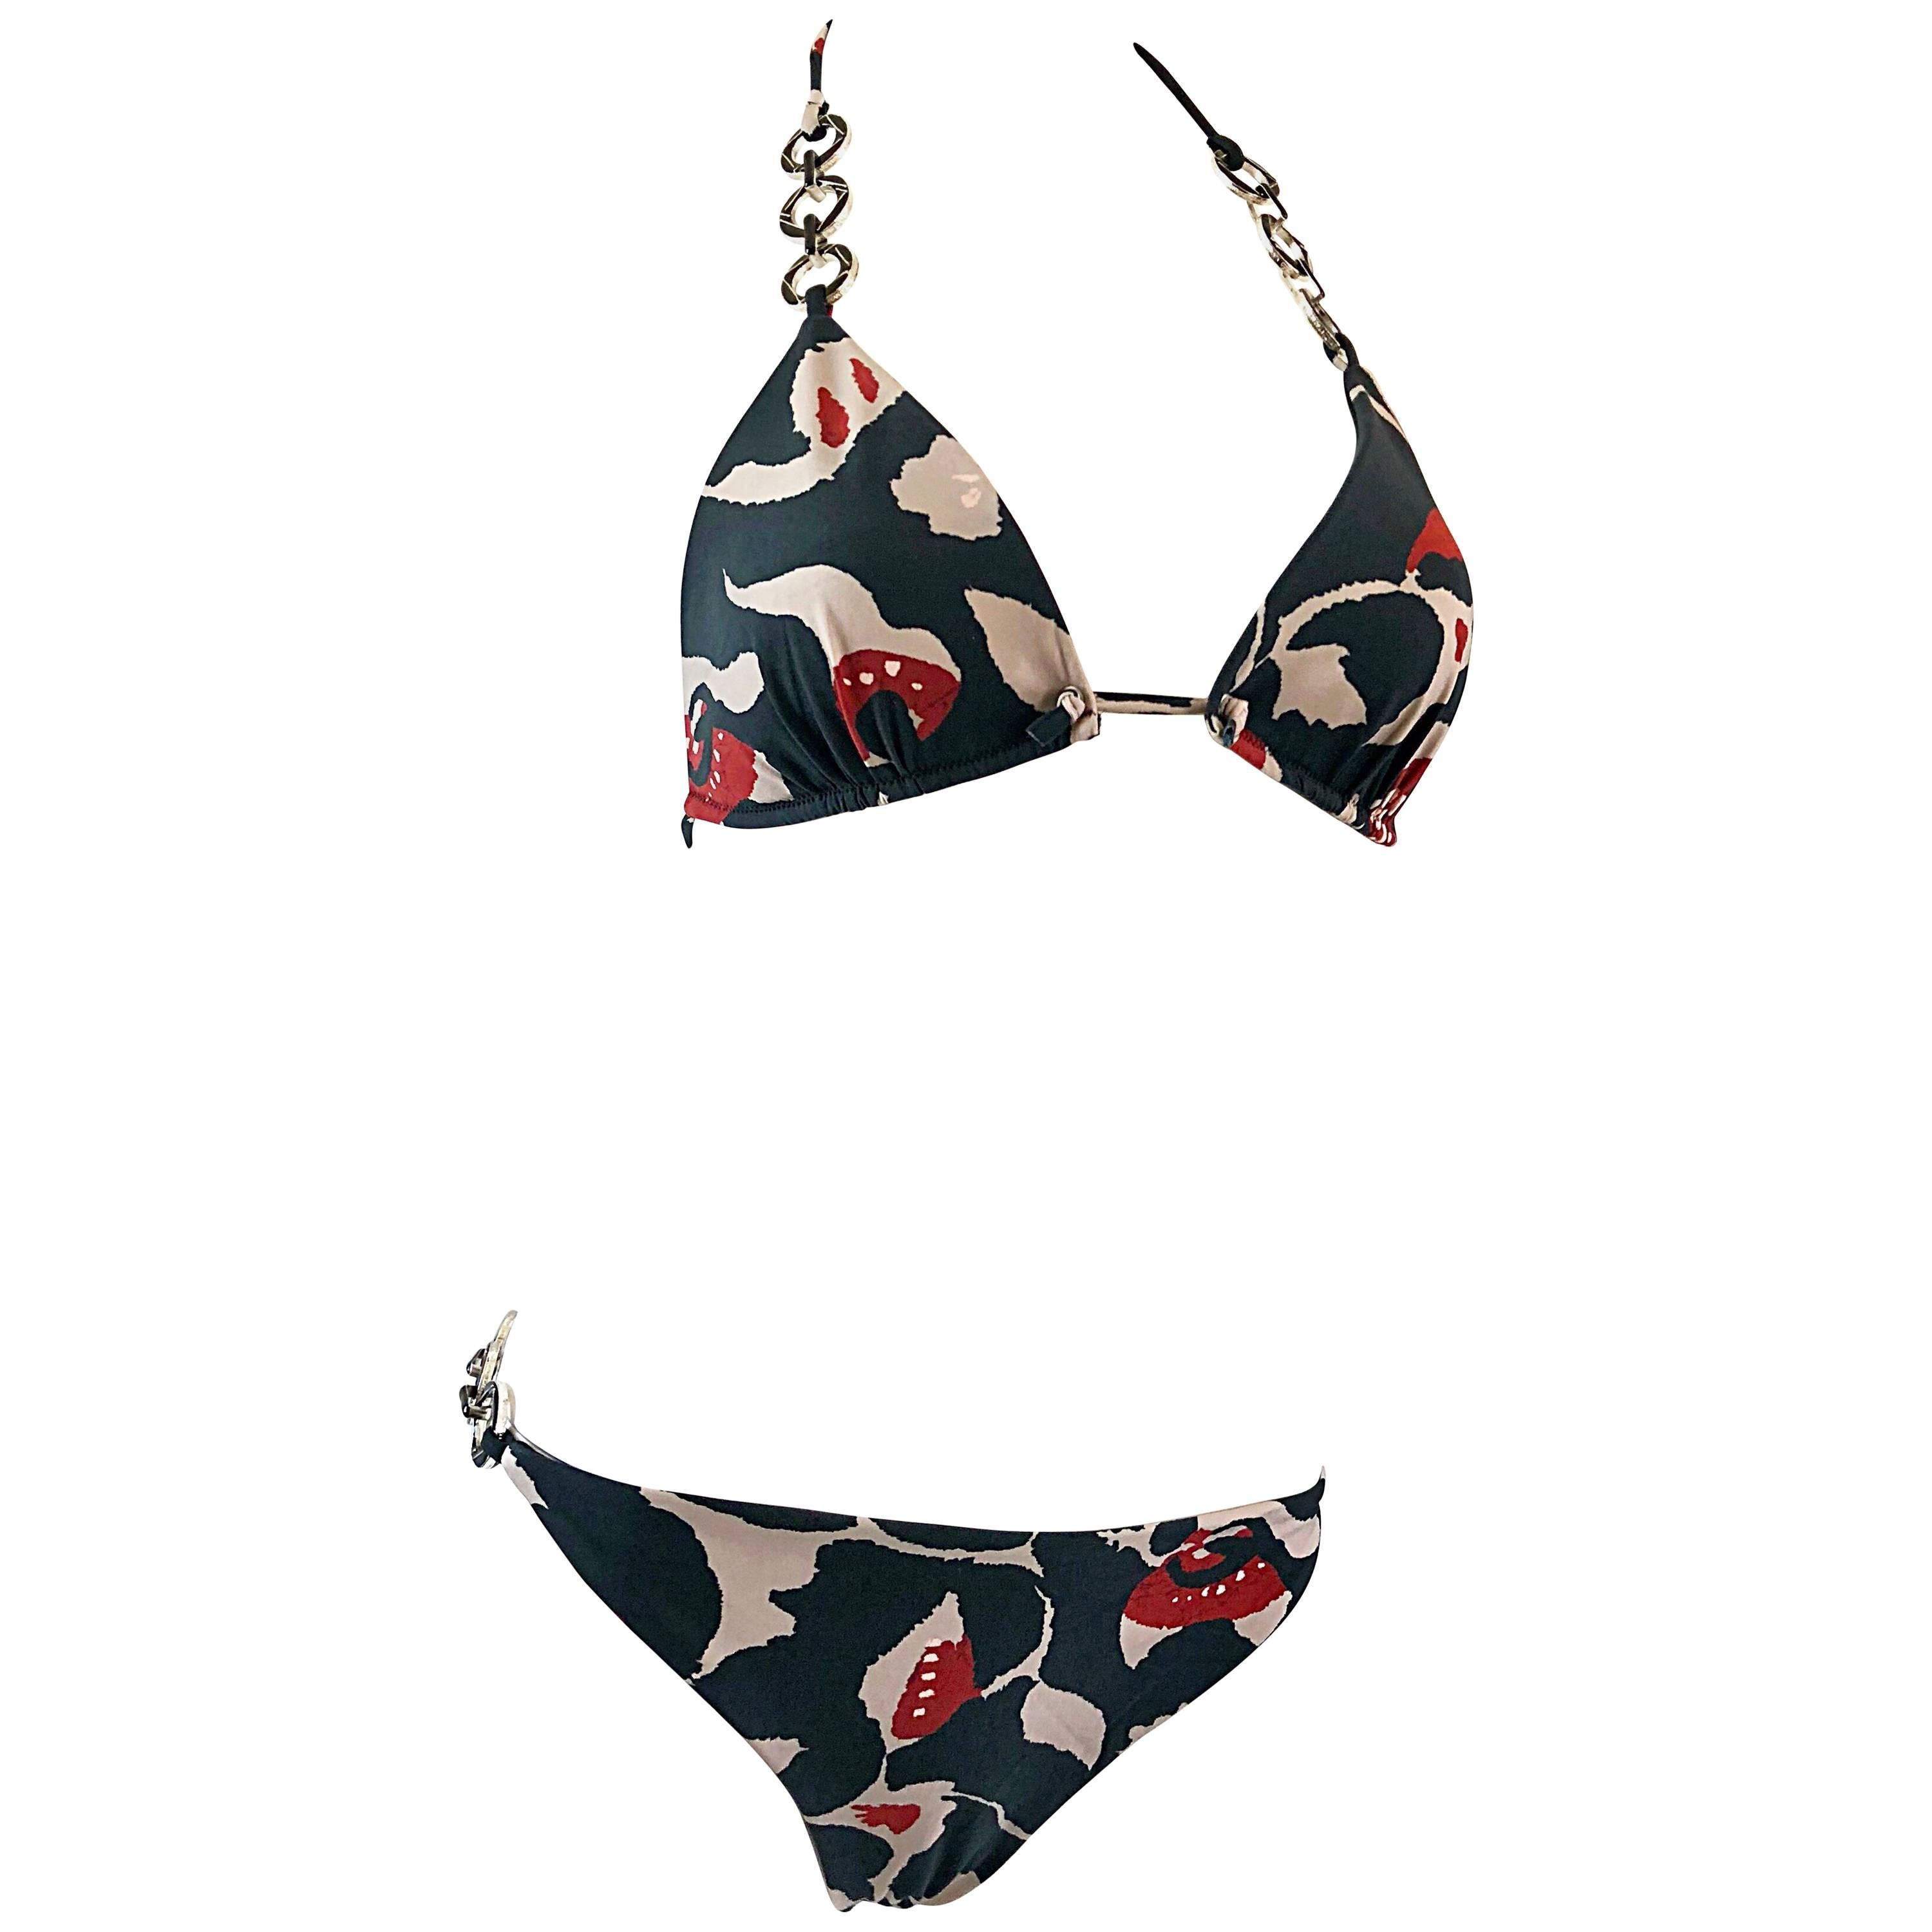 Oscar de la Renta Bikini-Badeanzug mit Batikmuster und Kettengliedern, neu mit Preisschildern, Größe Large